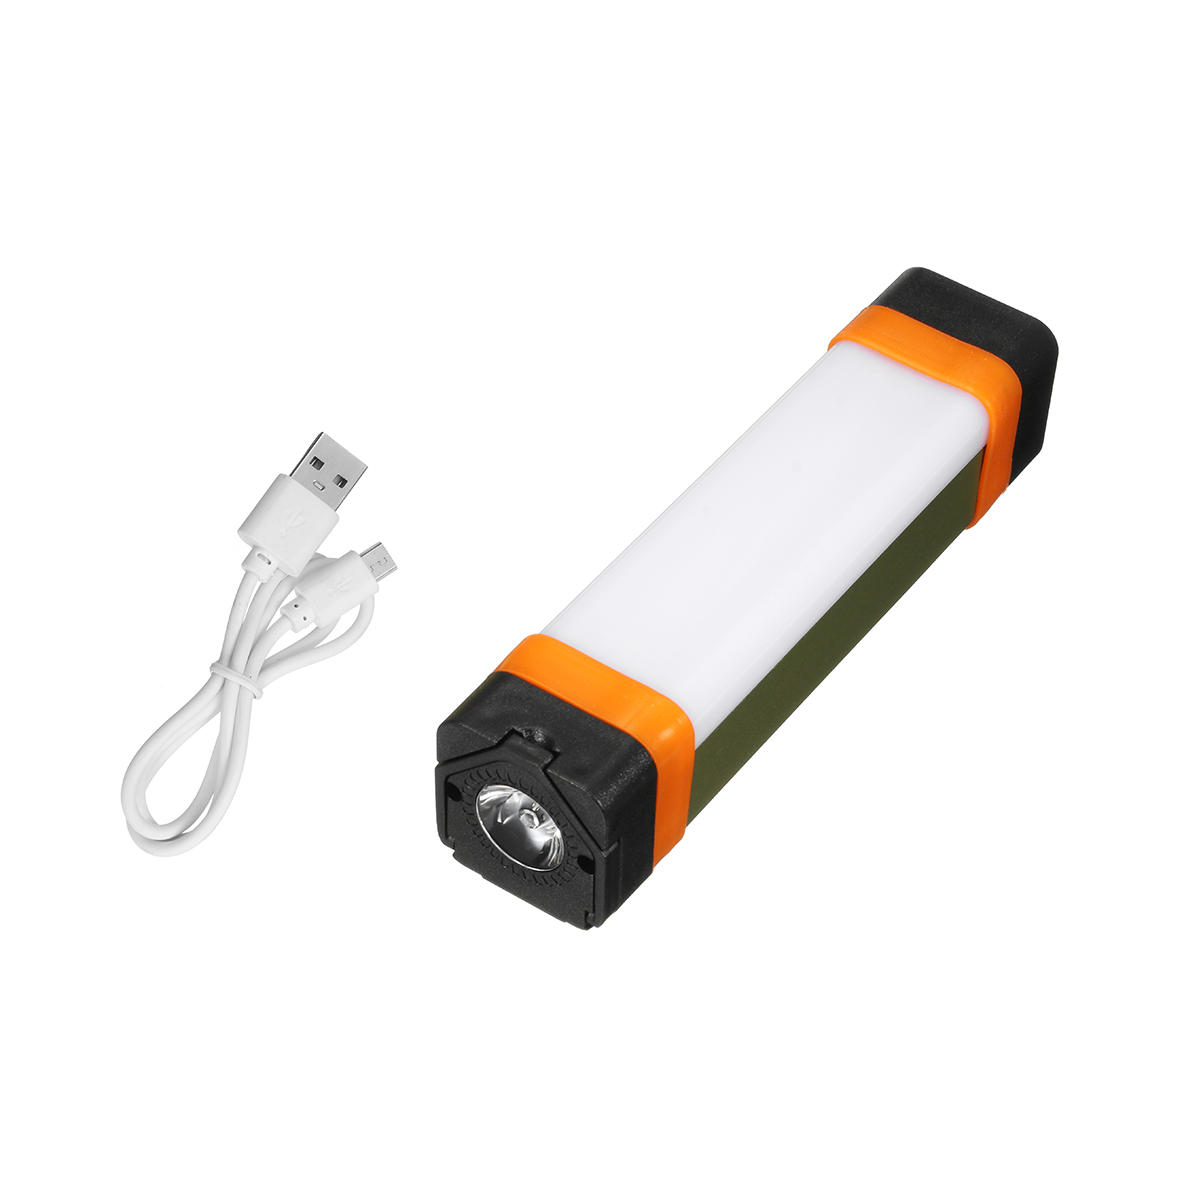 Открытый Многофункциональный Кемпинг Свет USB Аккумуляторная Аварийное освещение Power Bank Лампа Рабочий свет с Магнит и Крюк